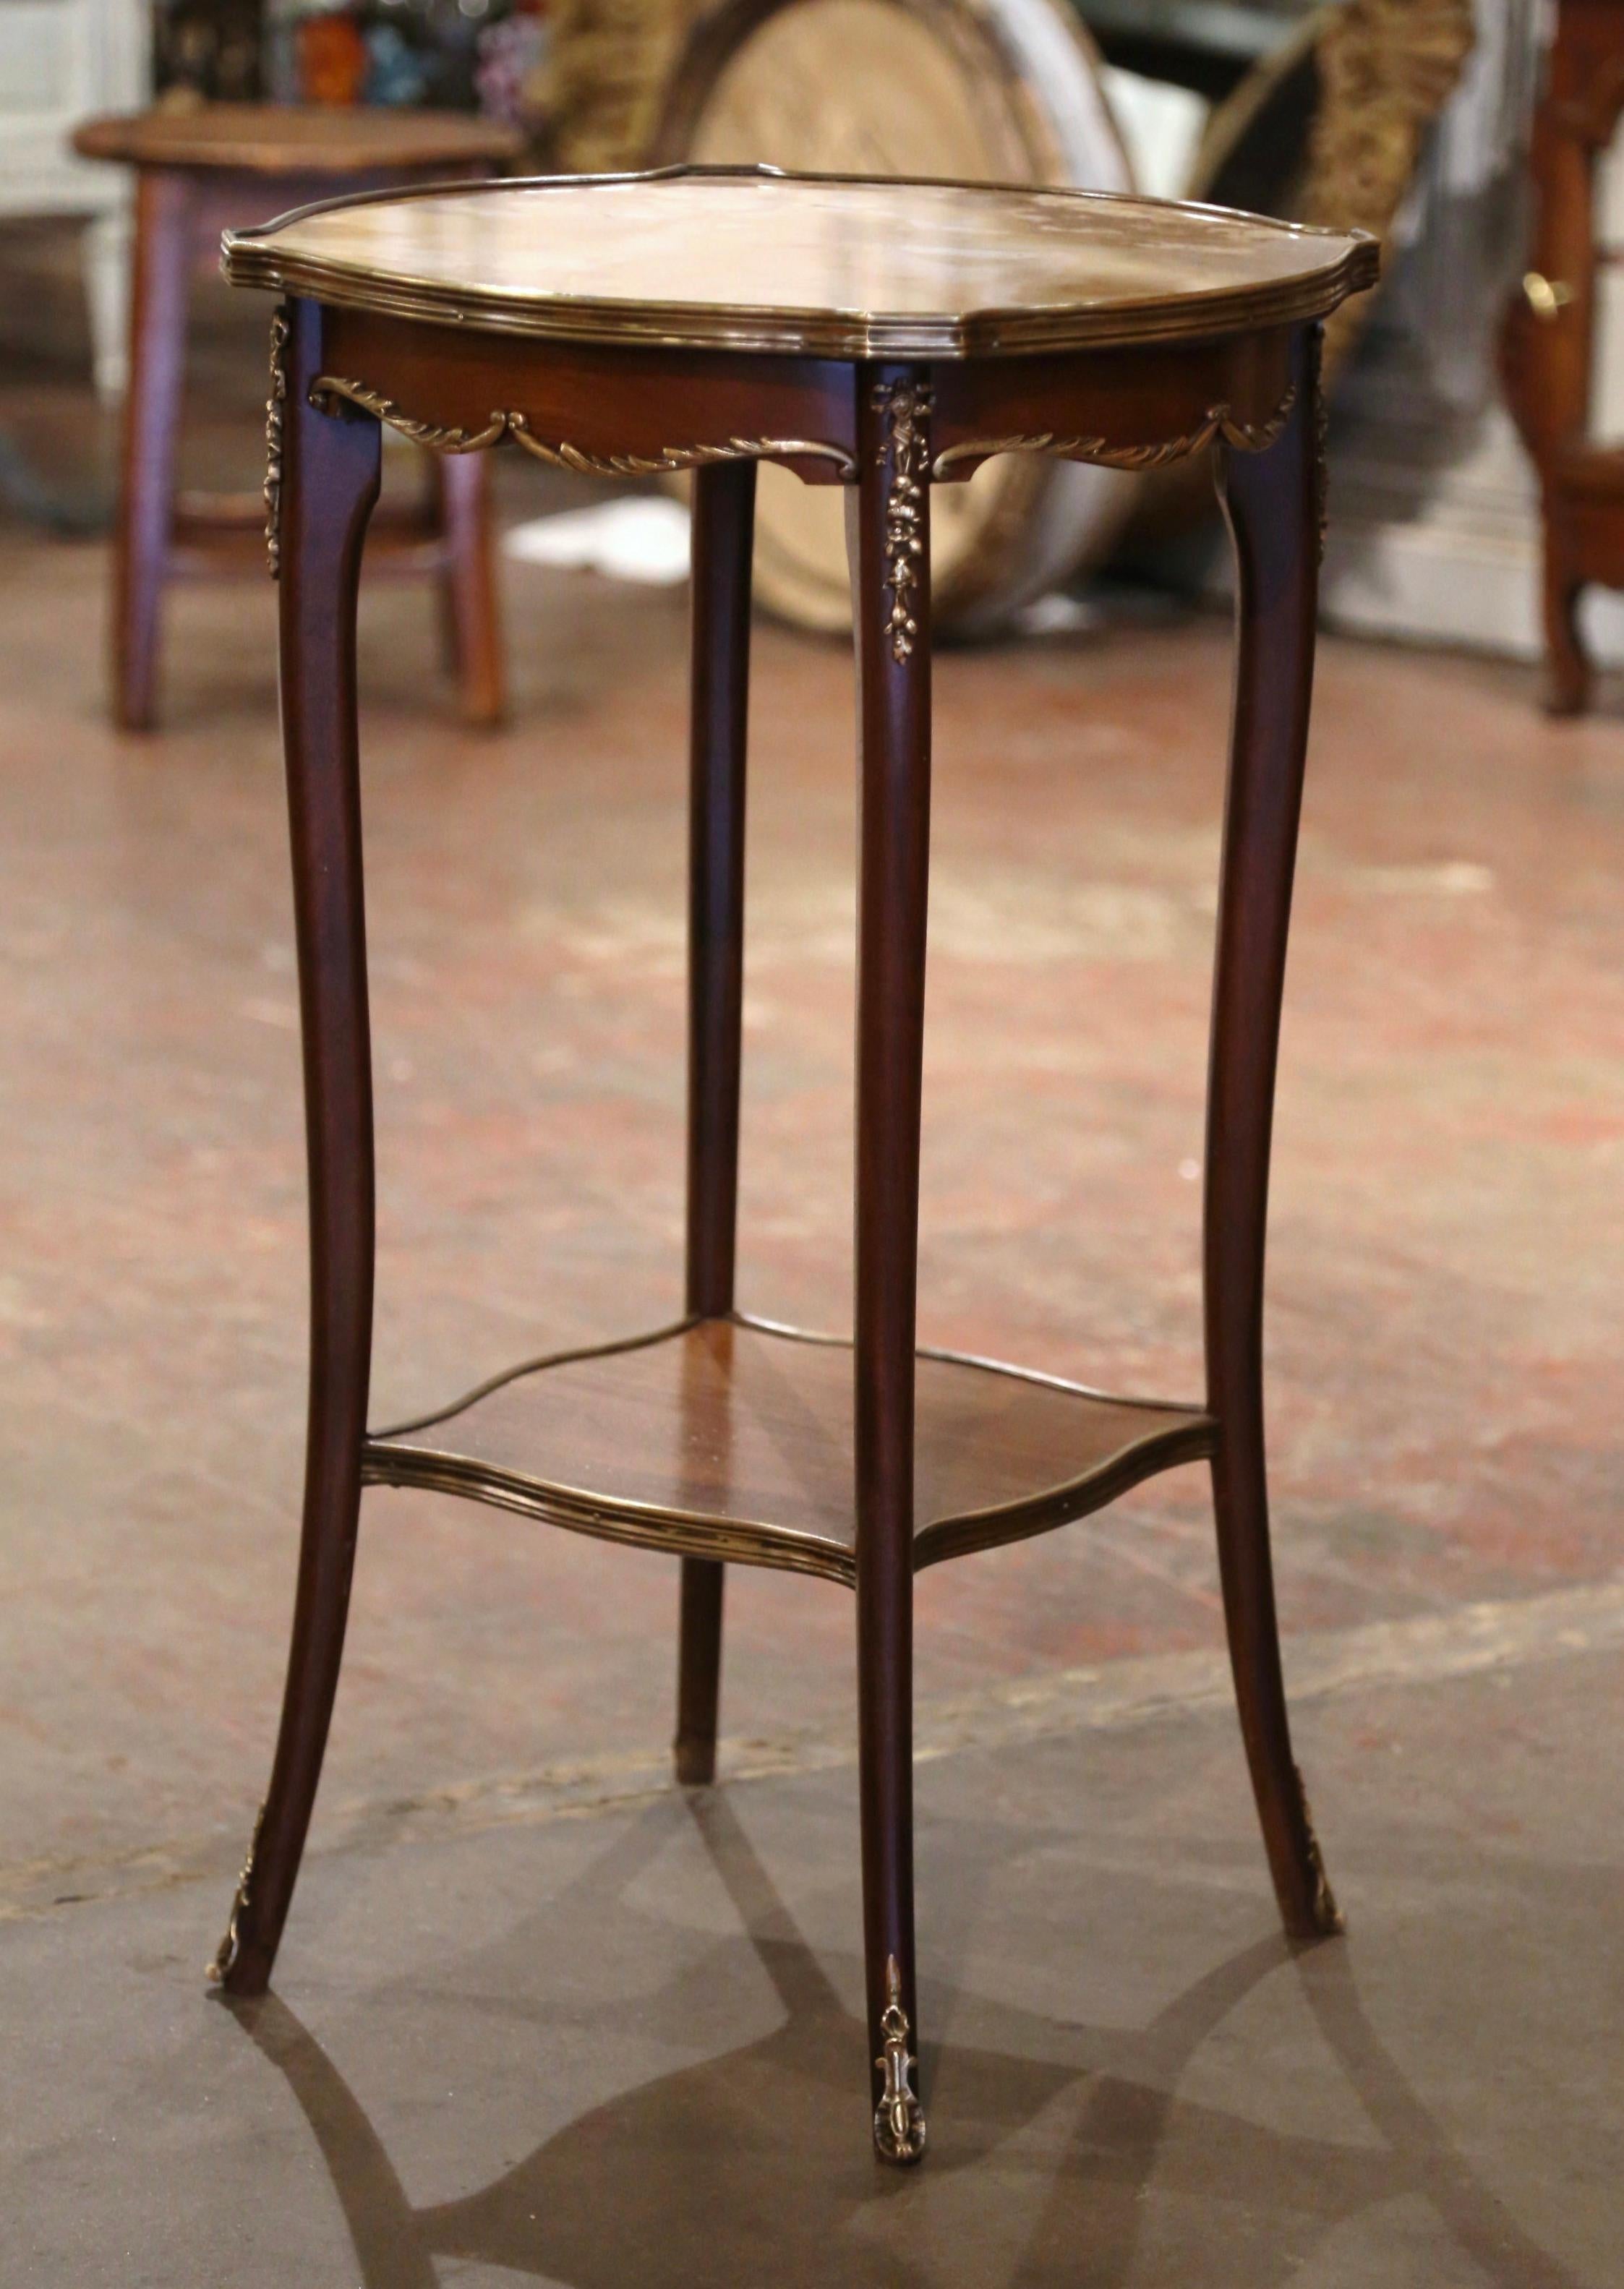  Décorez un salon avec cette élégante table d'appoint ancienne. Fabriquée en France vers 1950, de forme ronde avec des coins en retrait, la table repose sur des pieds cabriole habillés de montures décoratives en bronze aux épaules et se terminant